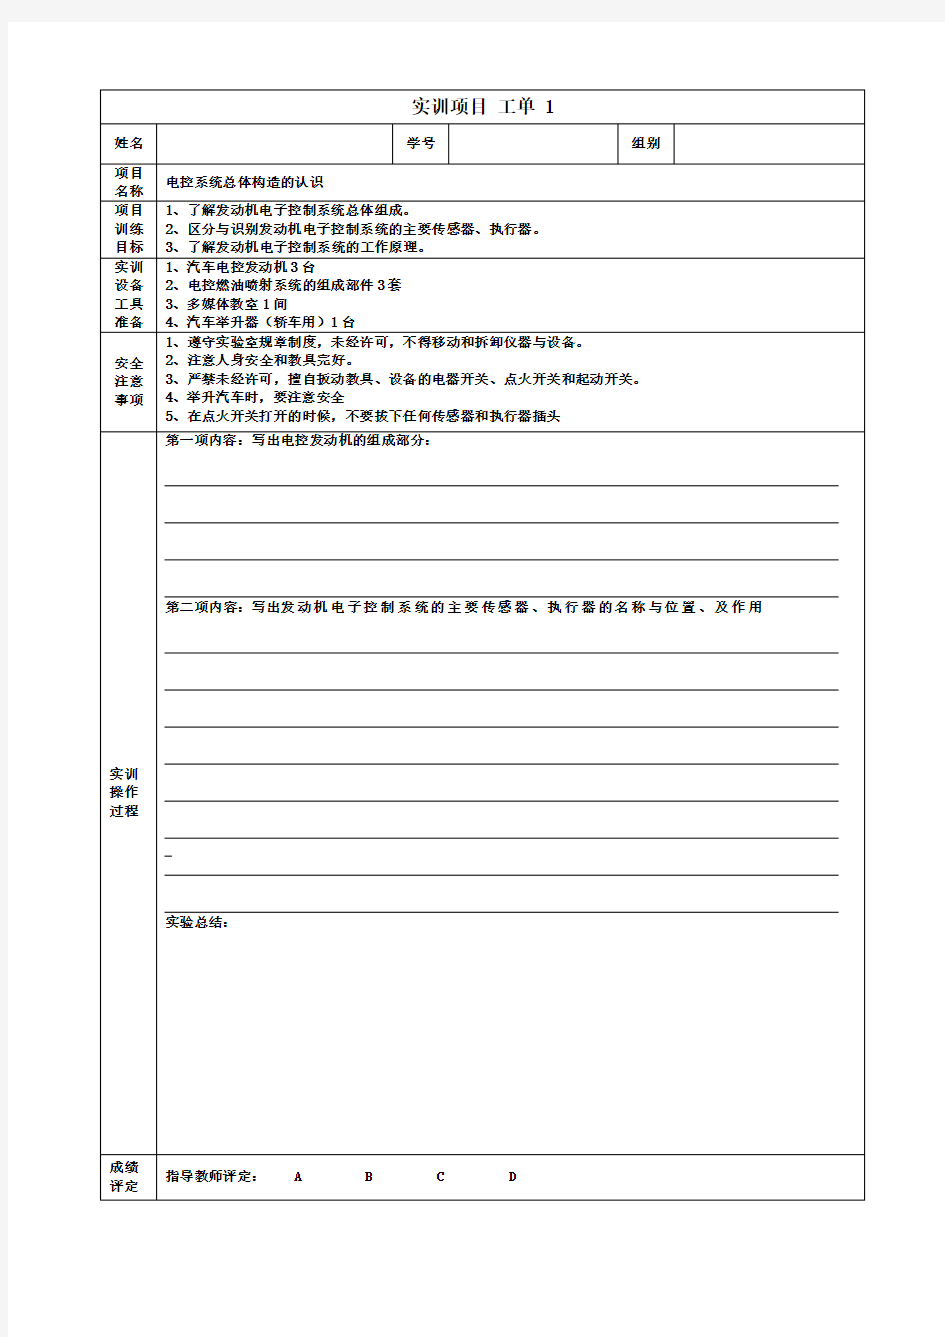 发动机电控技术实训项目工单(正文)